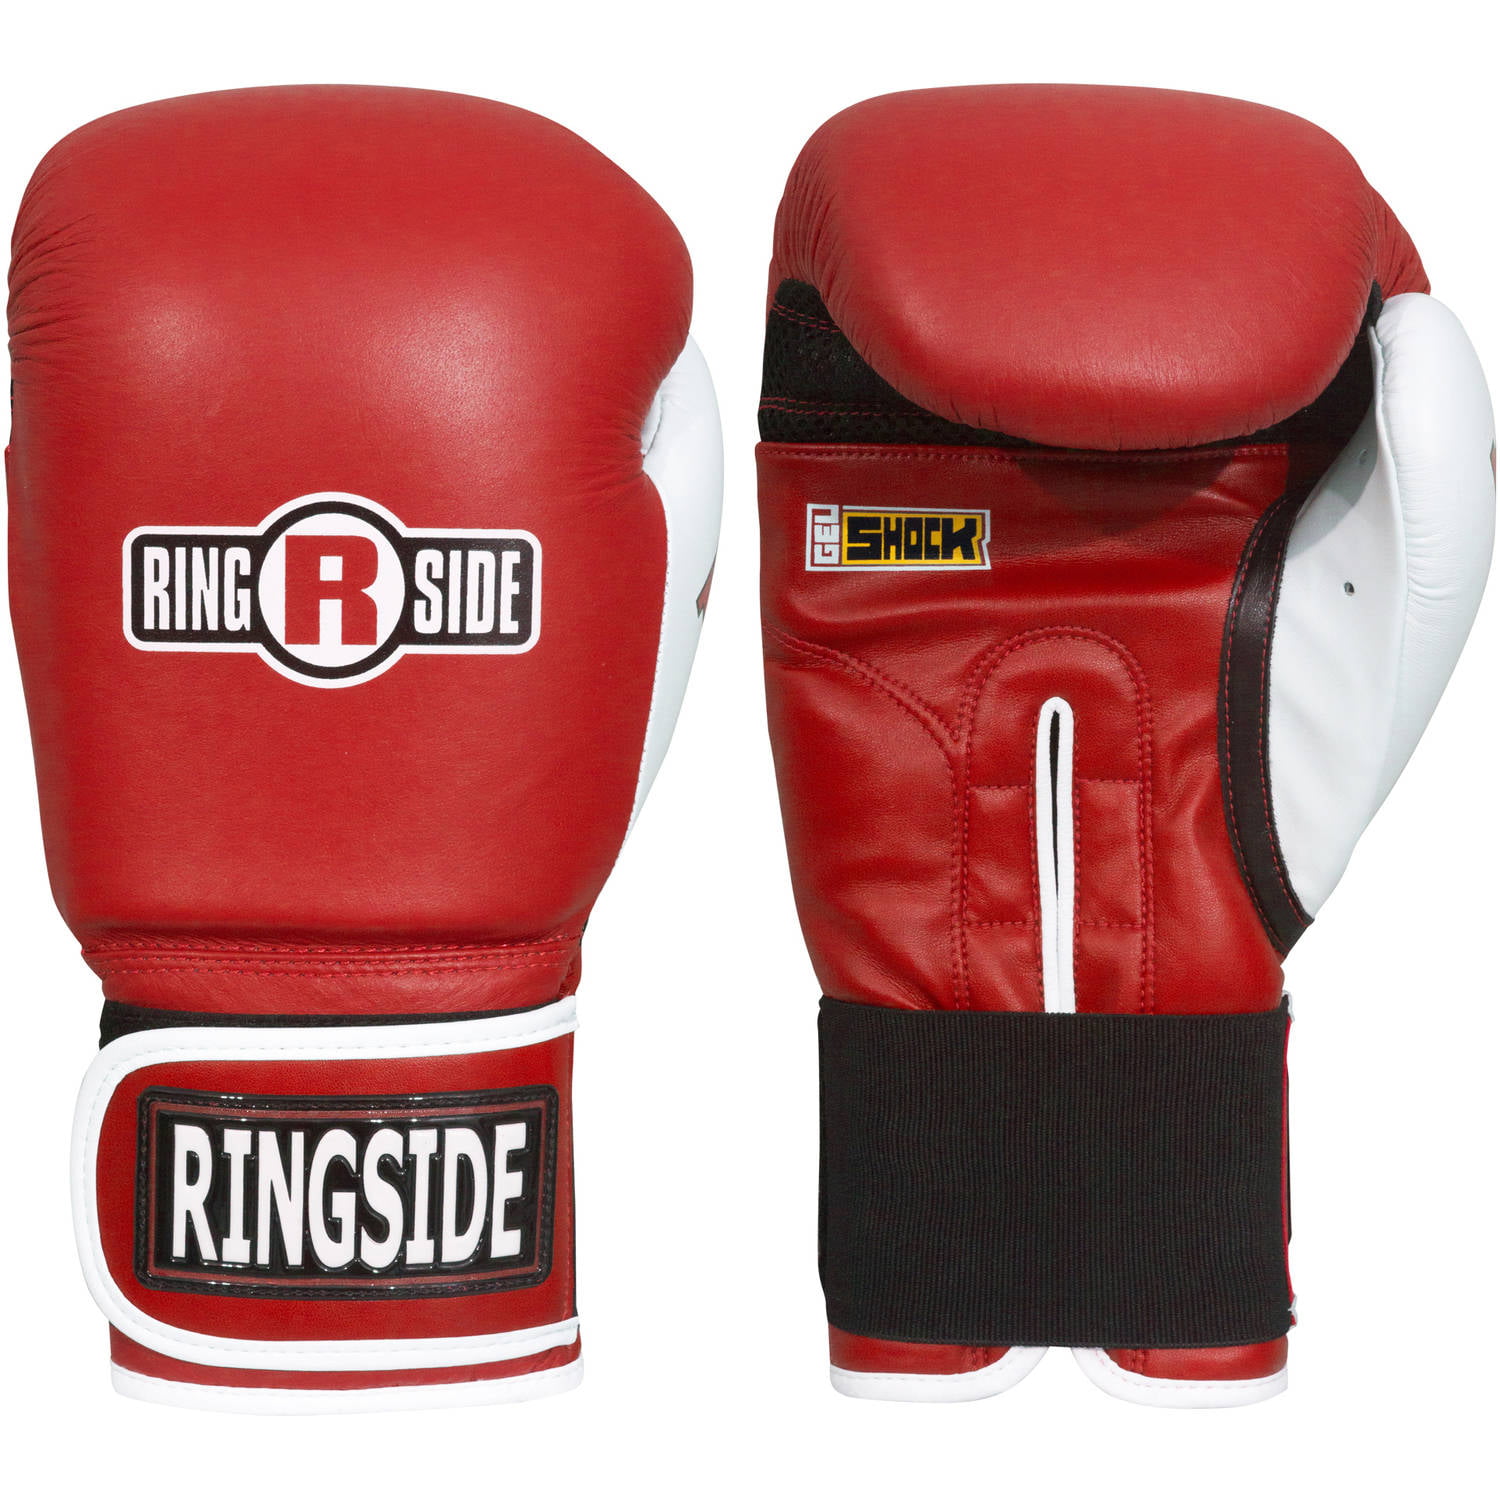 Ringside Boxing Gel Shock Safety Sparring Gloves 